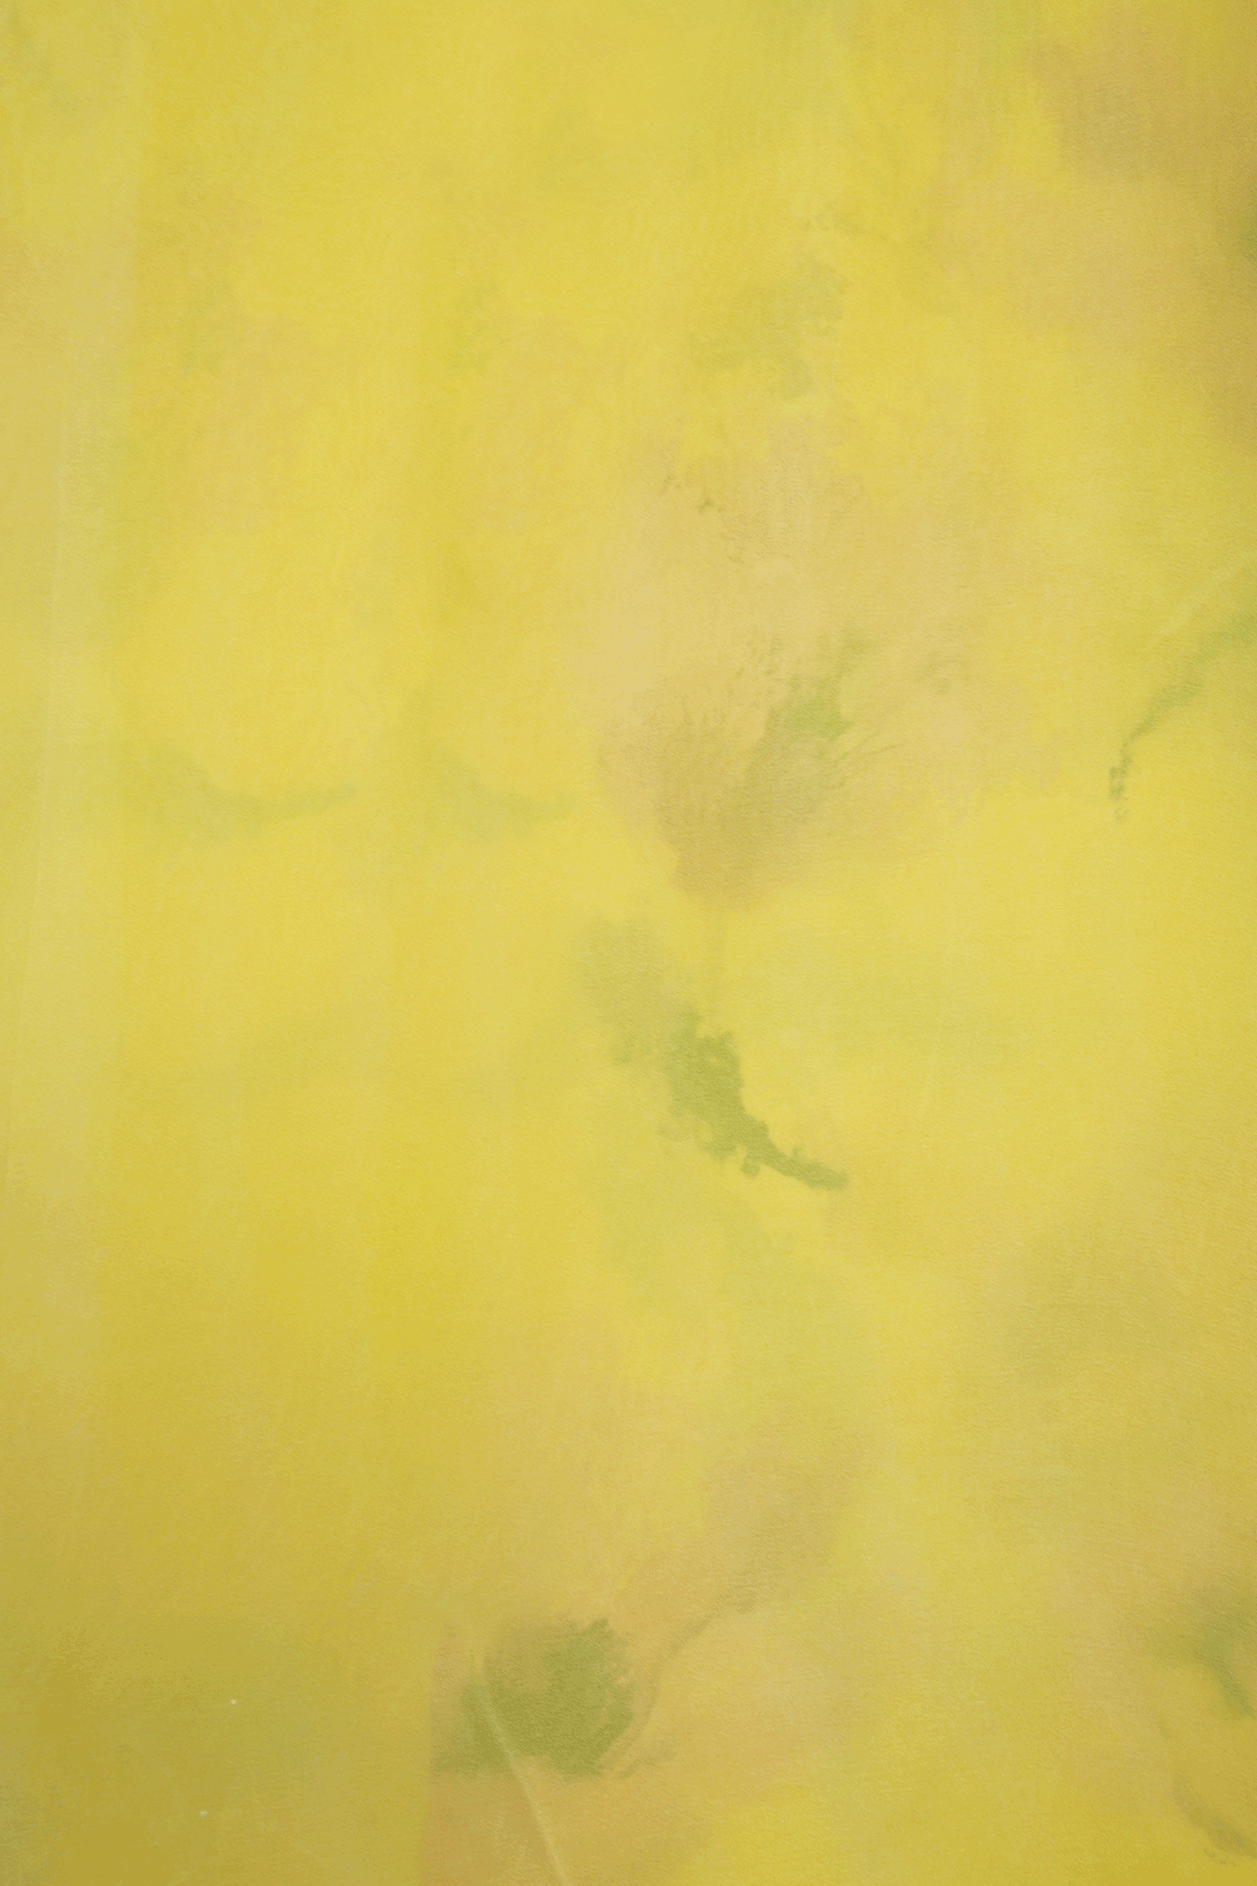 Floral Digital Printed Lemon Yellow Satin Crepe Saree